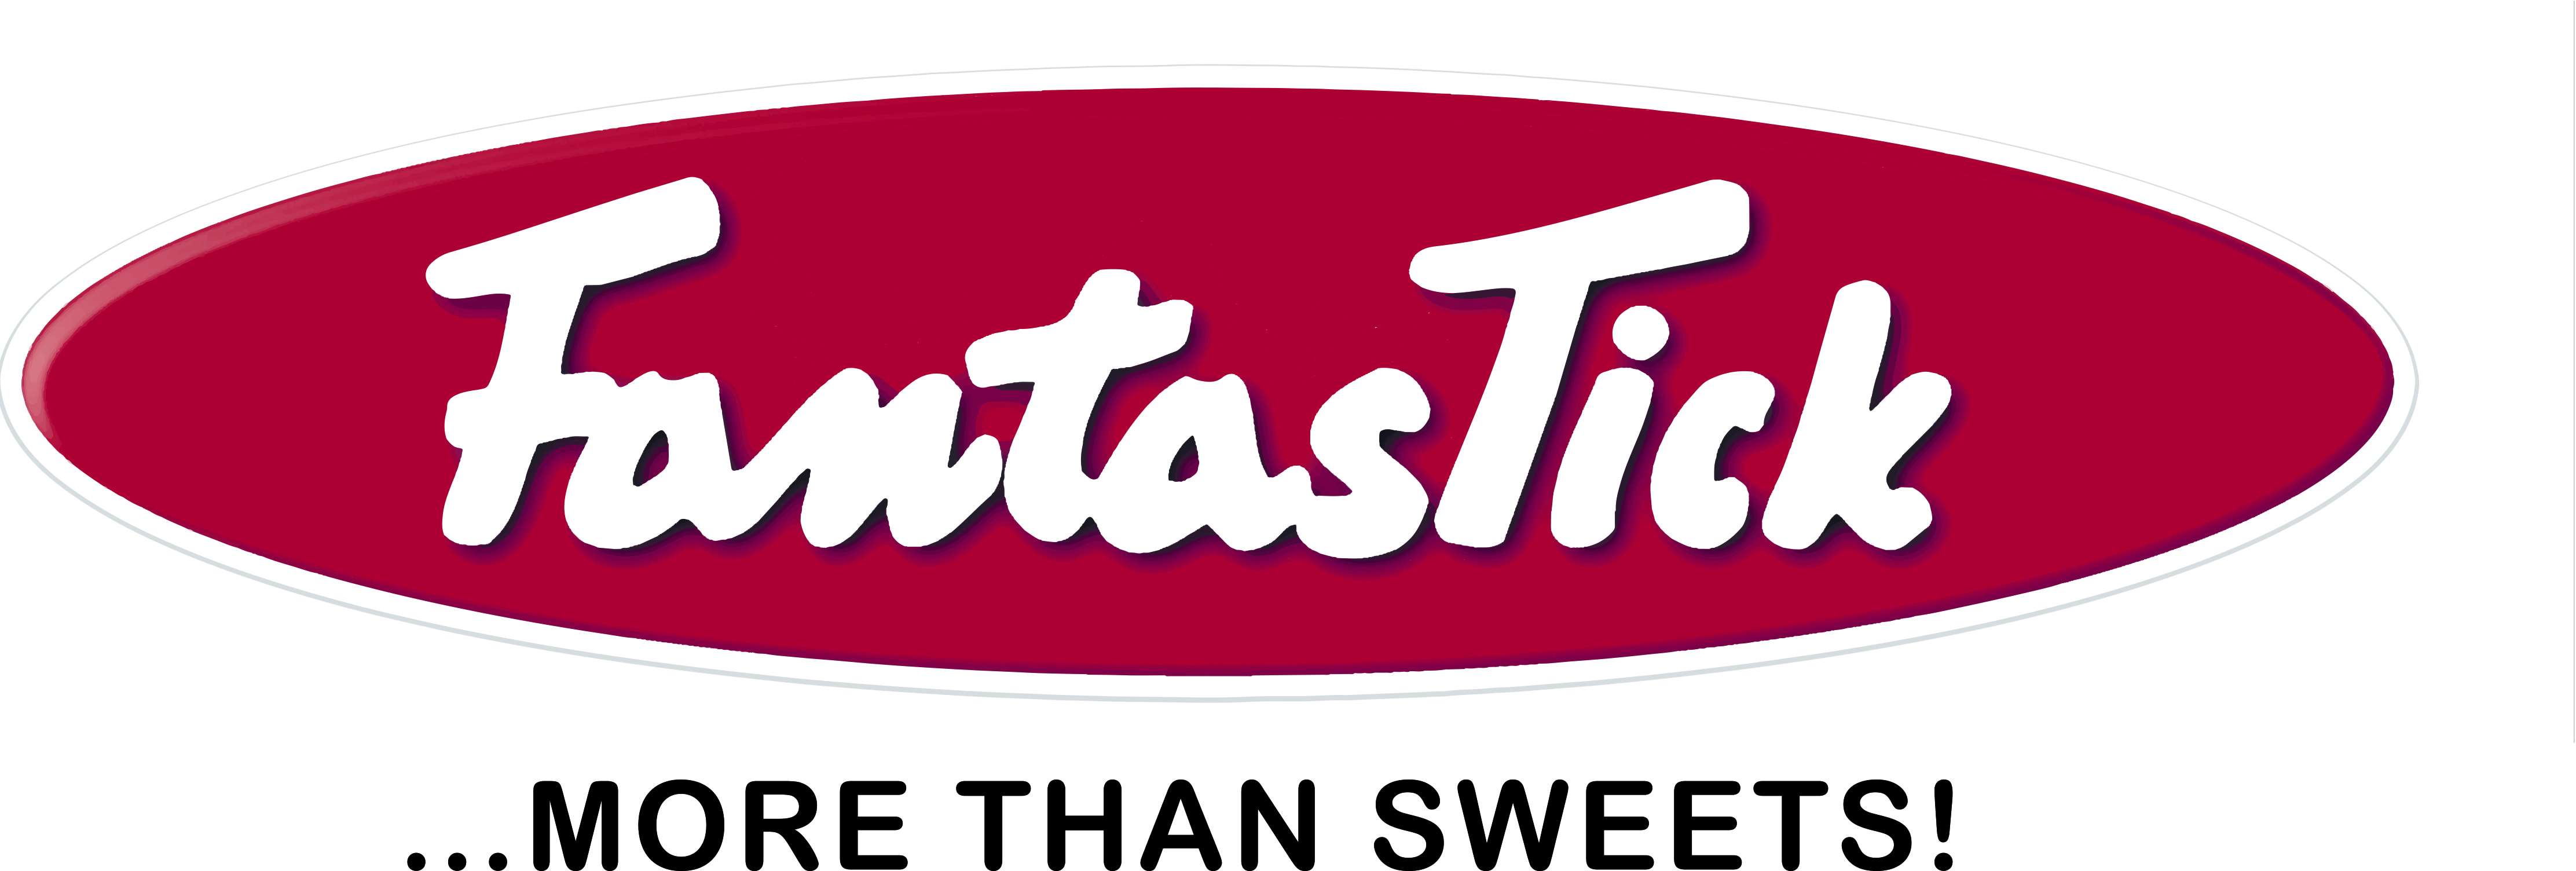 FantasTick Logo min